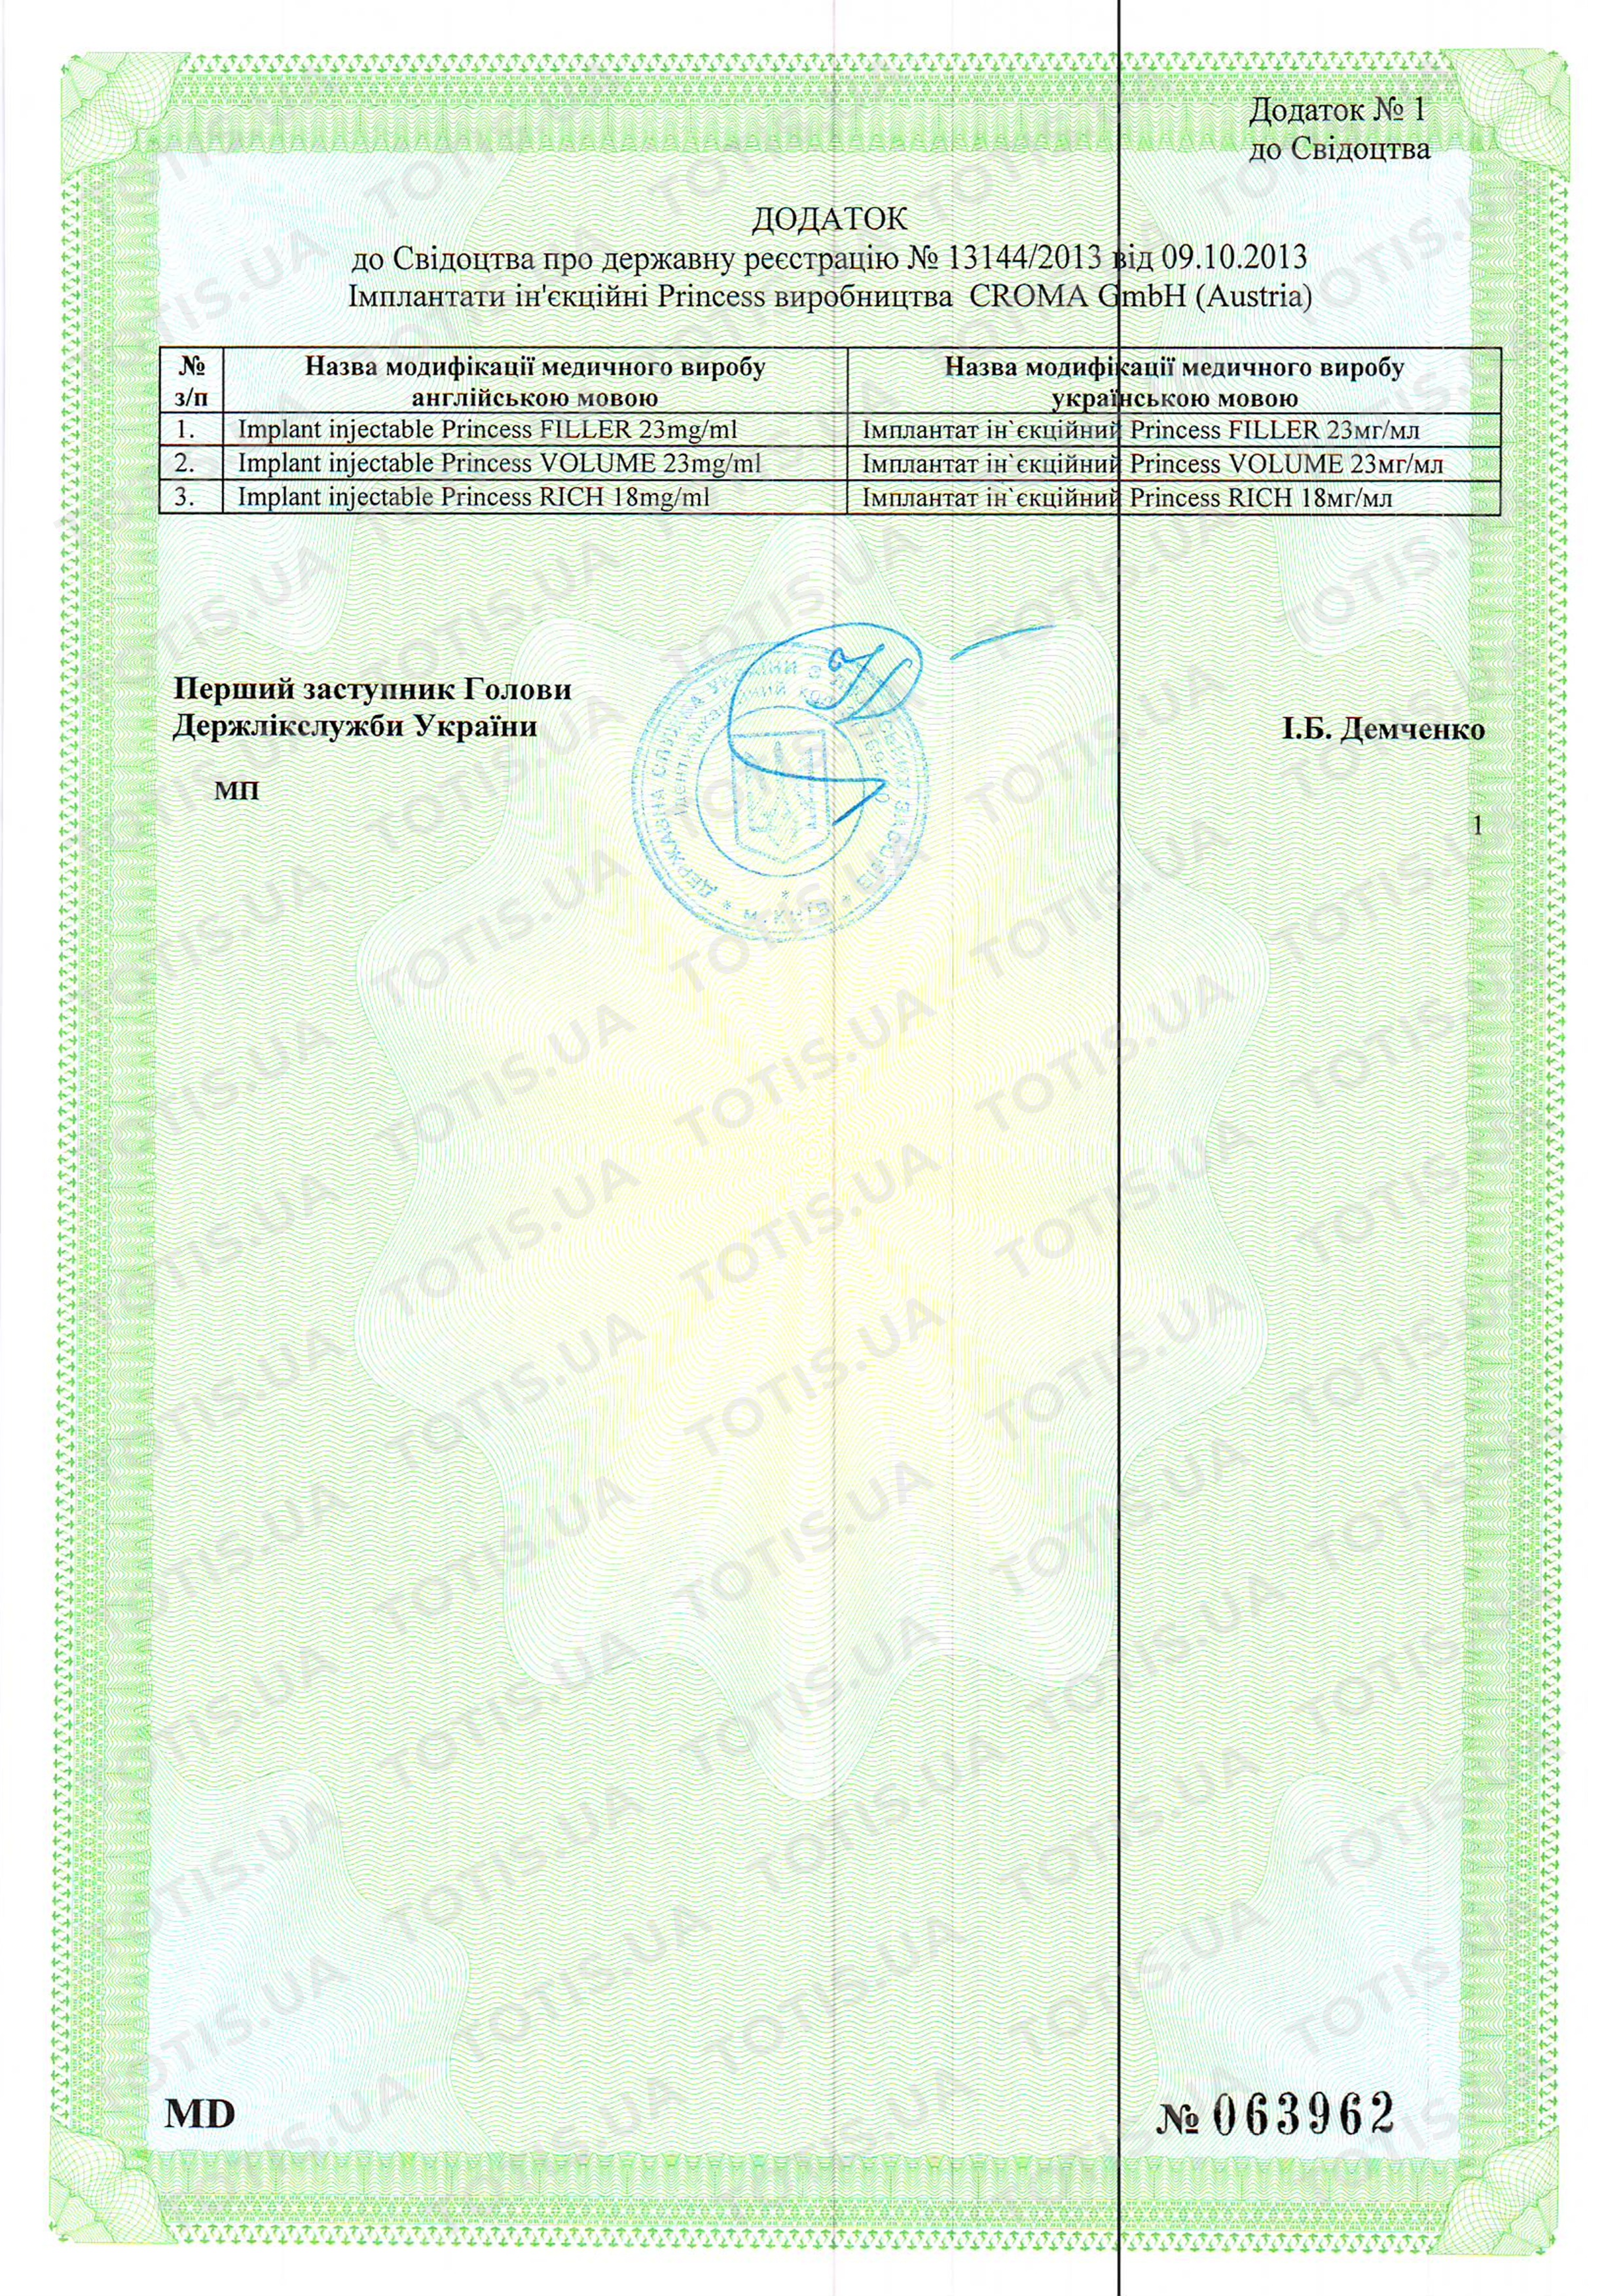 Сертификат препаратов Croma в Украине